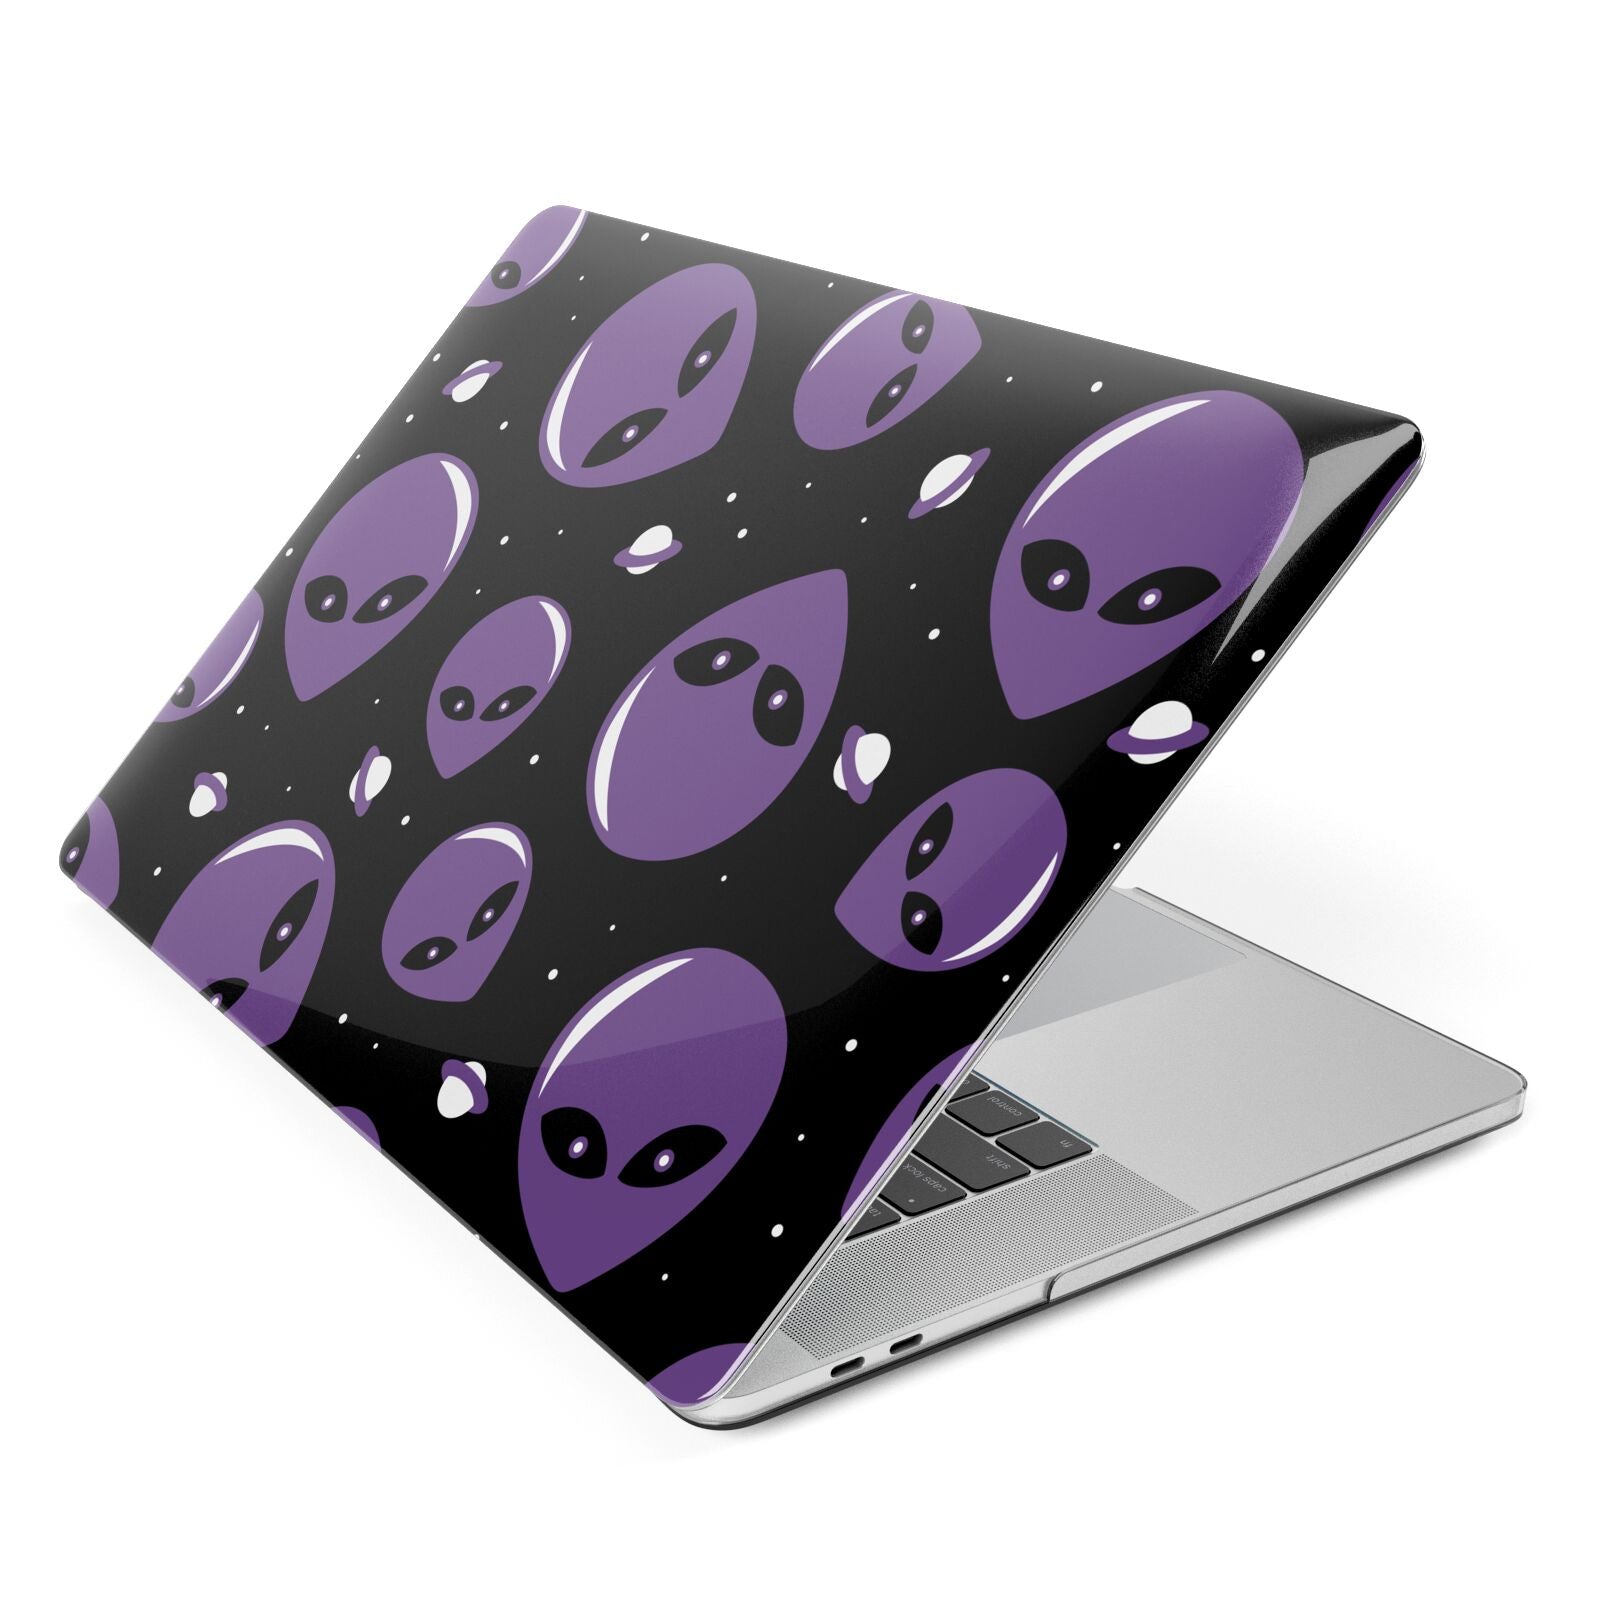 Alien Faces Apple MacBook Case Side View